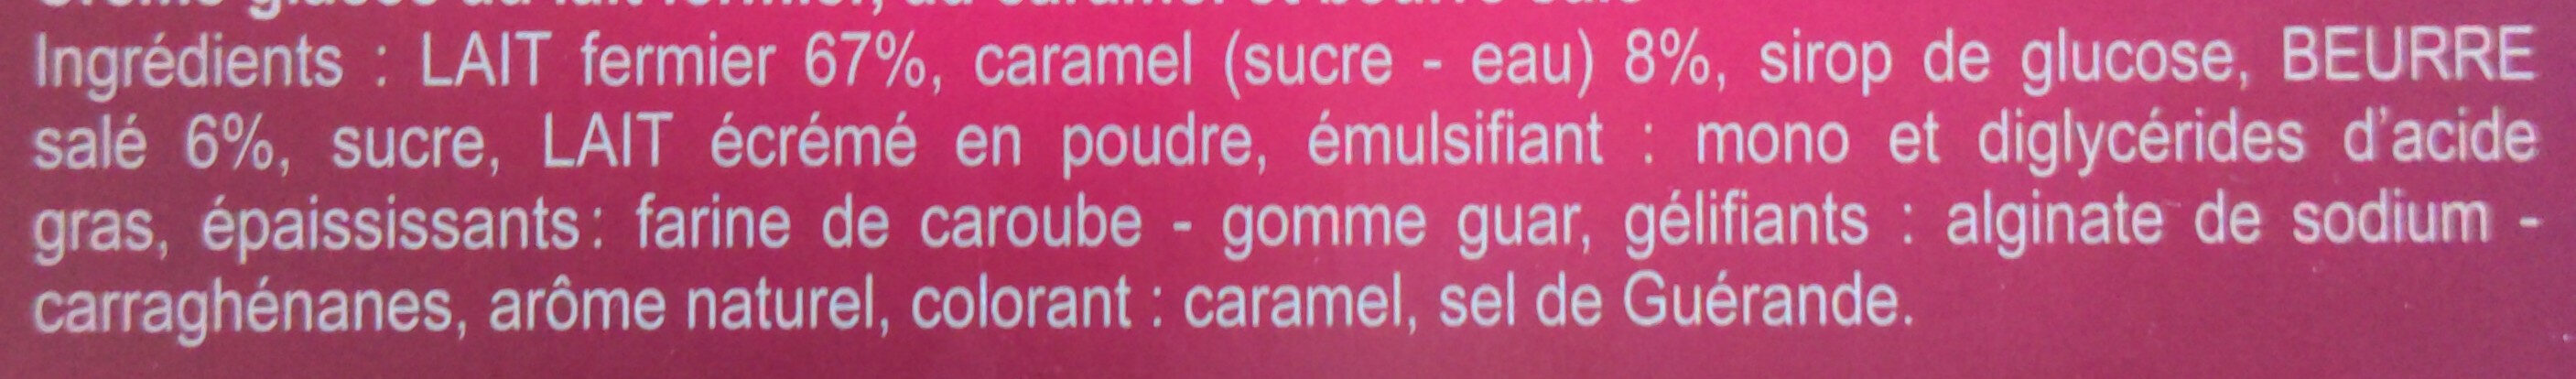 Crème glacée au caramel au beurre salé - Ingredients - fr